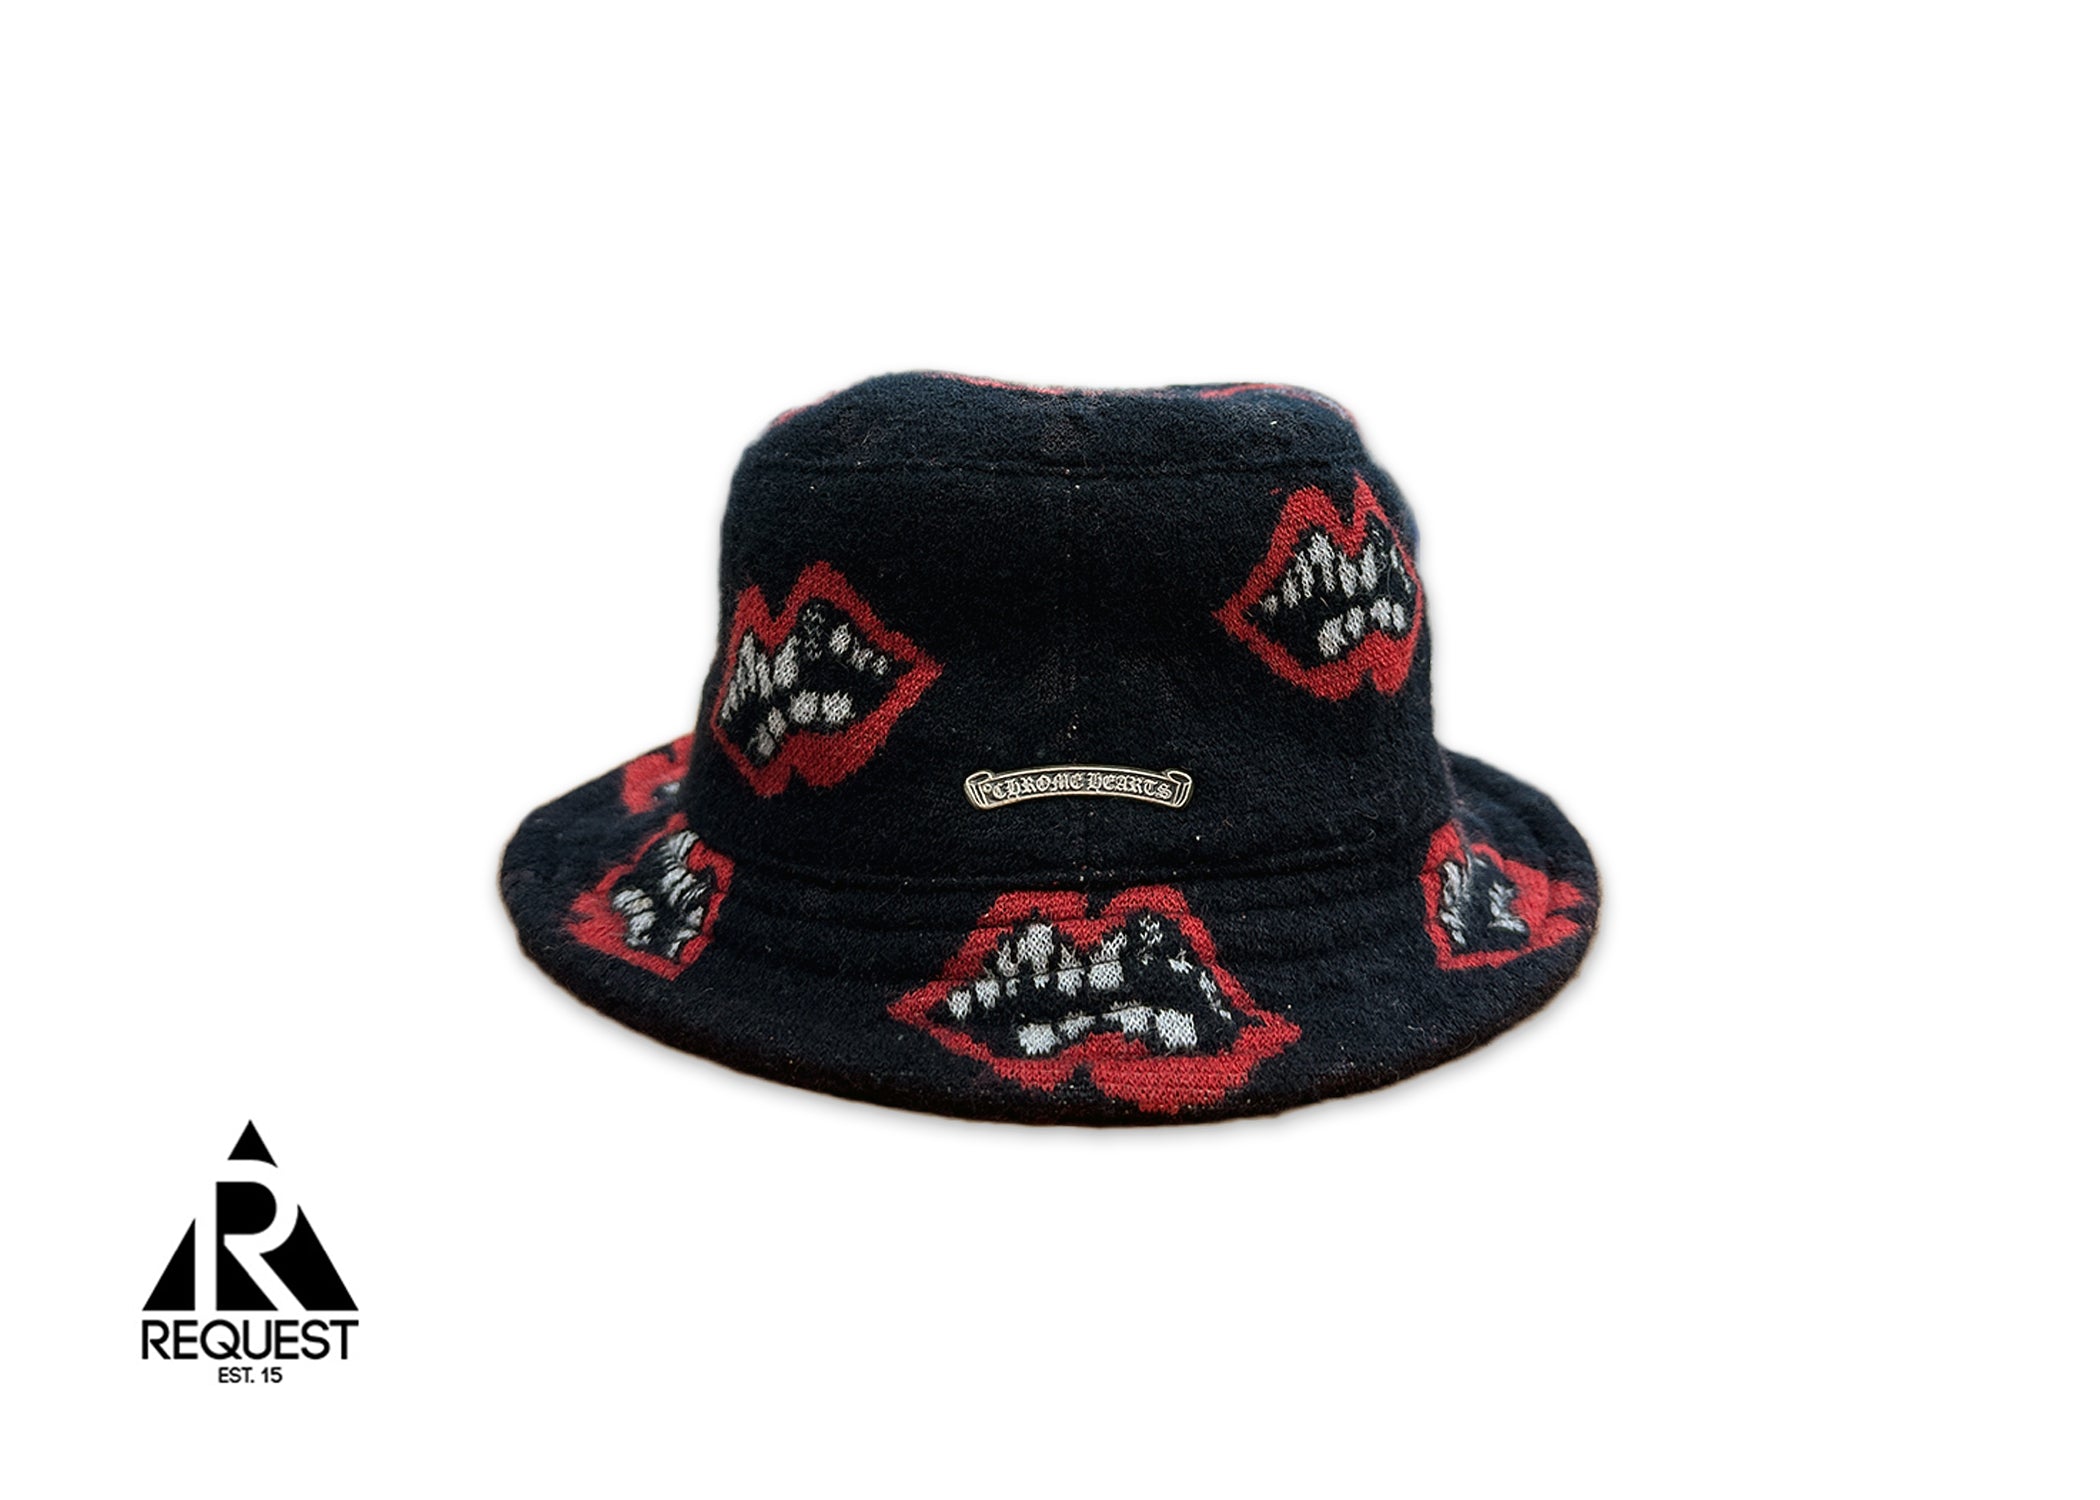 Cashmere Matty Boy Chomper Bucket Hat "Black Red"